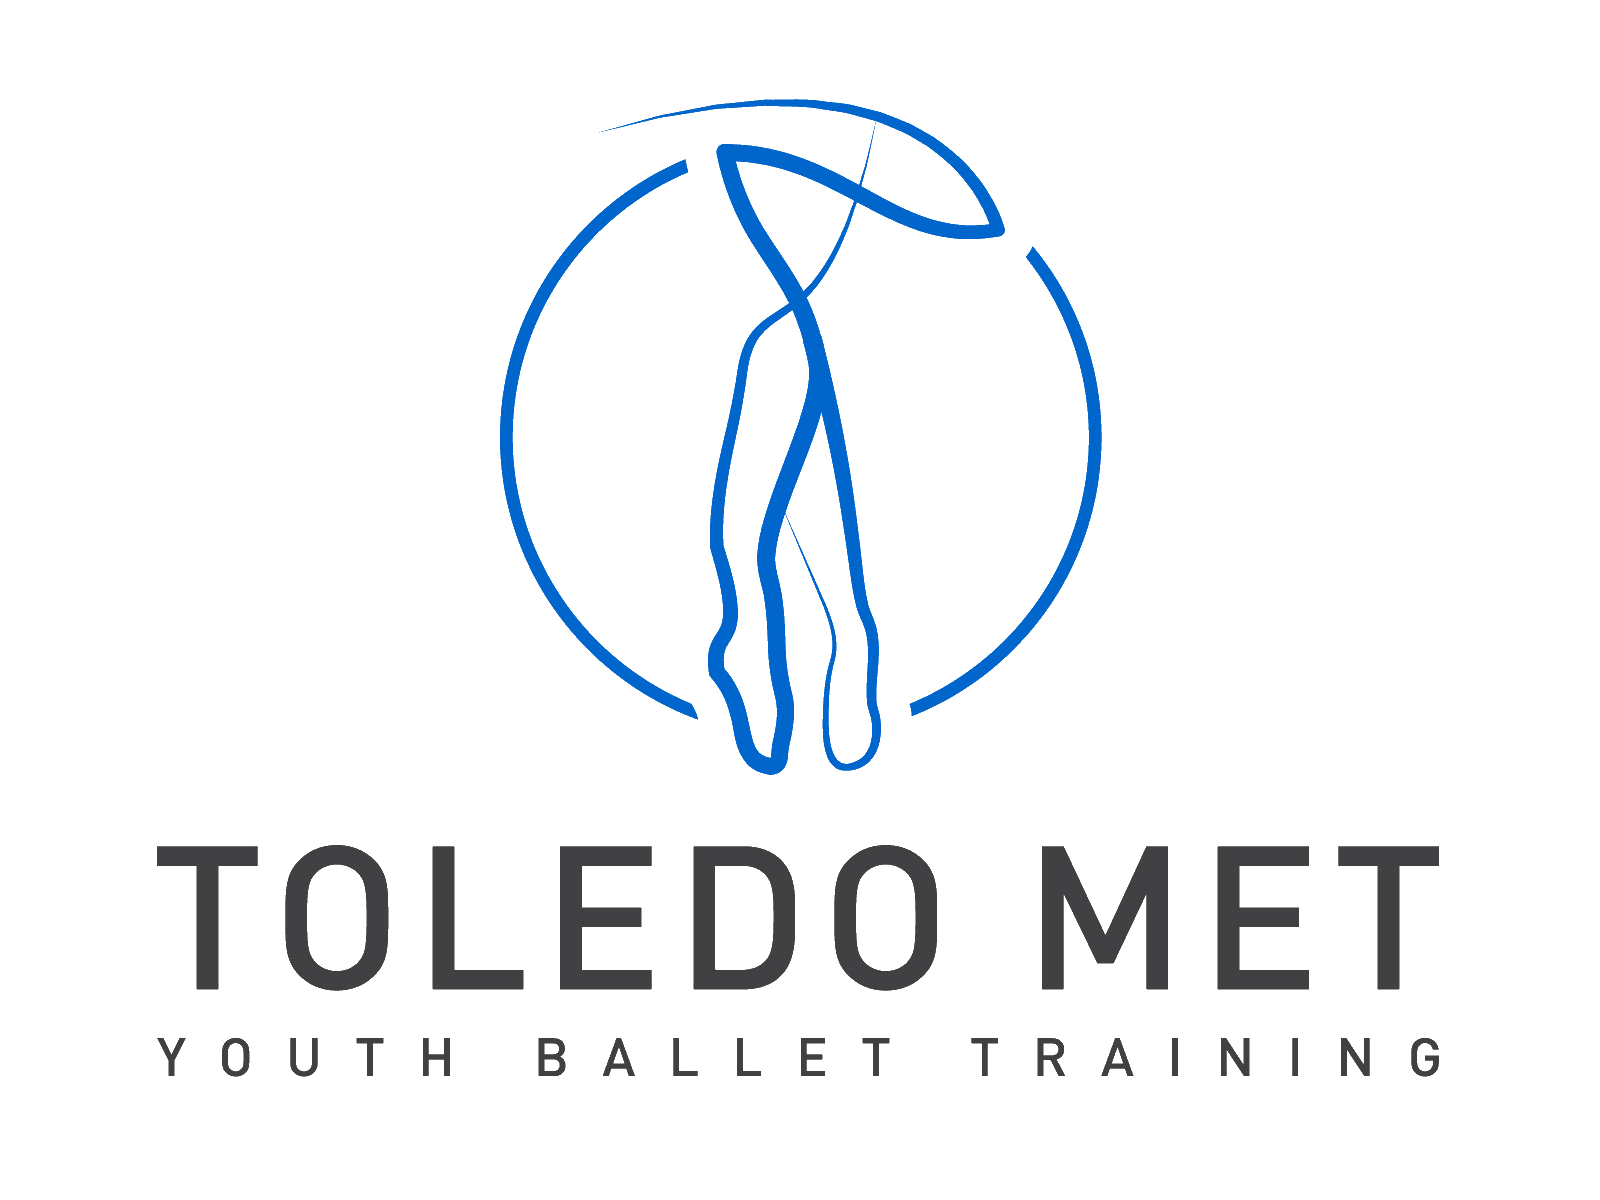 Youth Ballet Training - Toledo Met